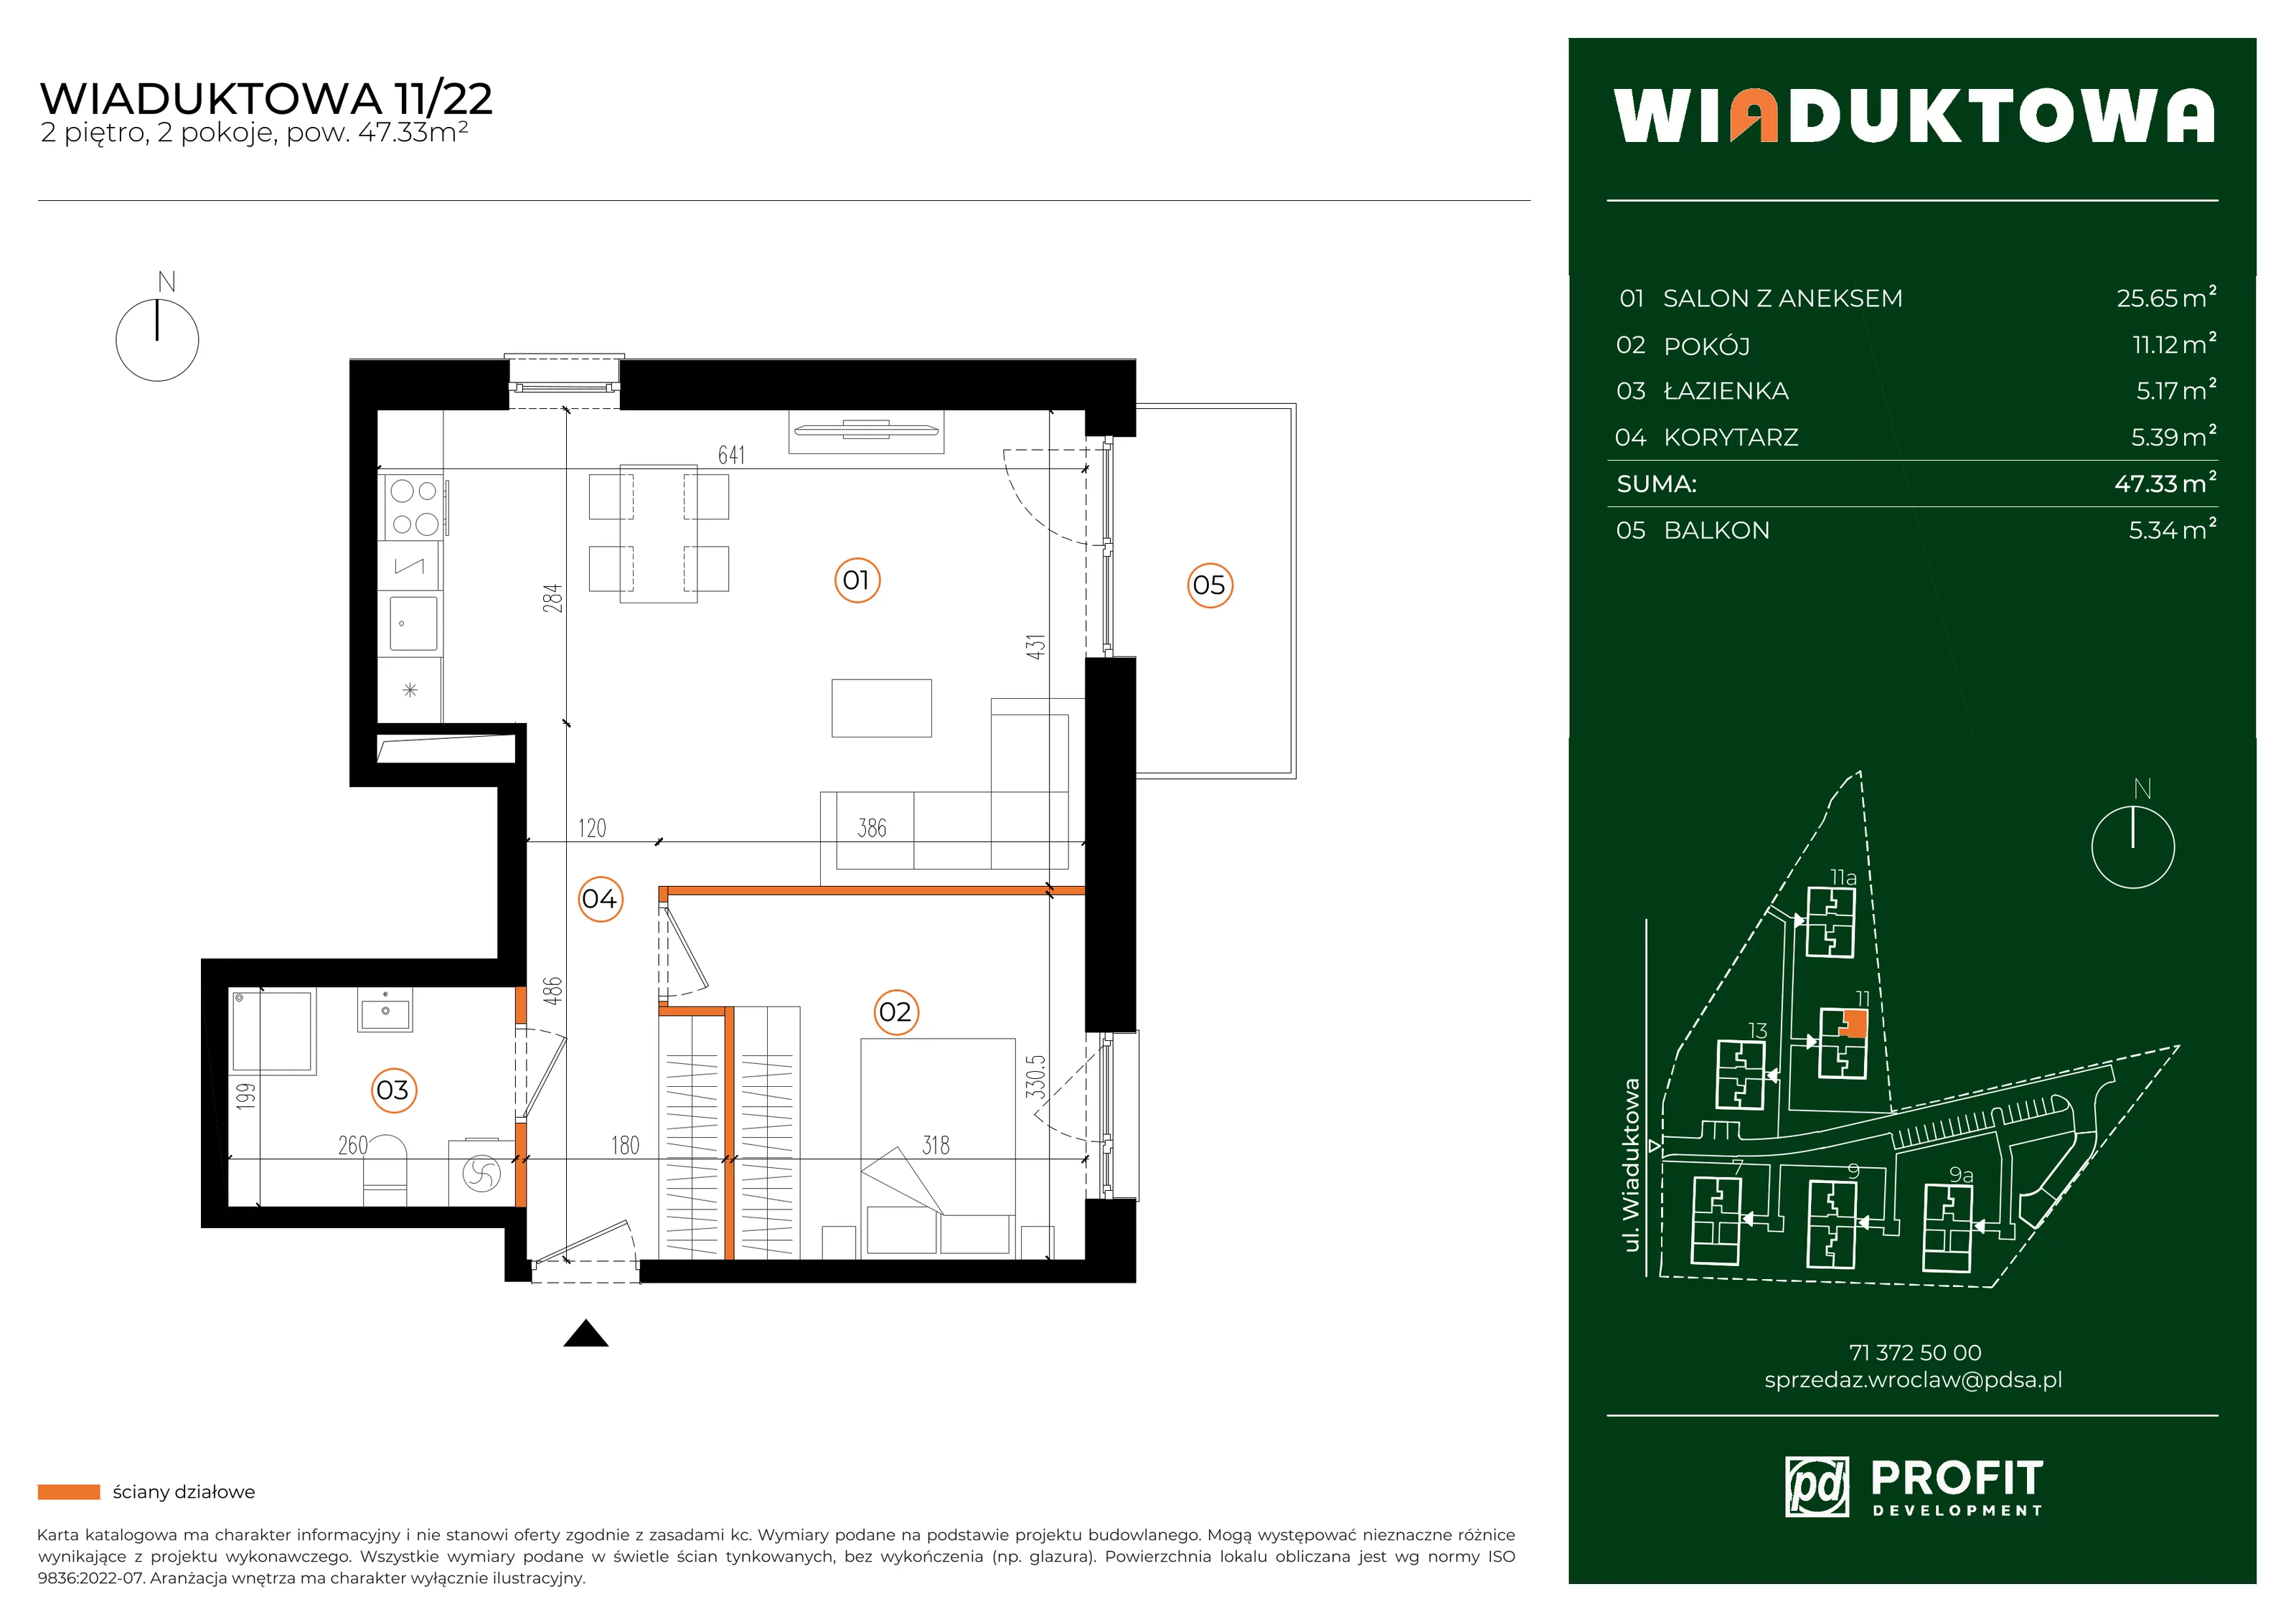 Mieszkanie 47,33 m², piętro 2, oferta nr WI/11/22, Wiaduktowa, Wrocław, Krzyki-Partynice, Krzyki, ul. Wiaduktowa